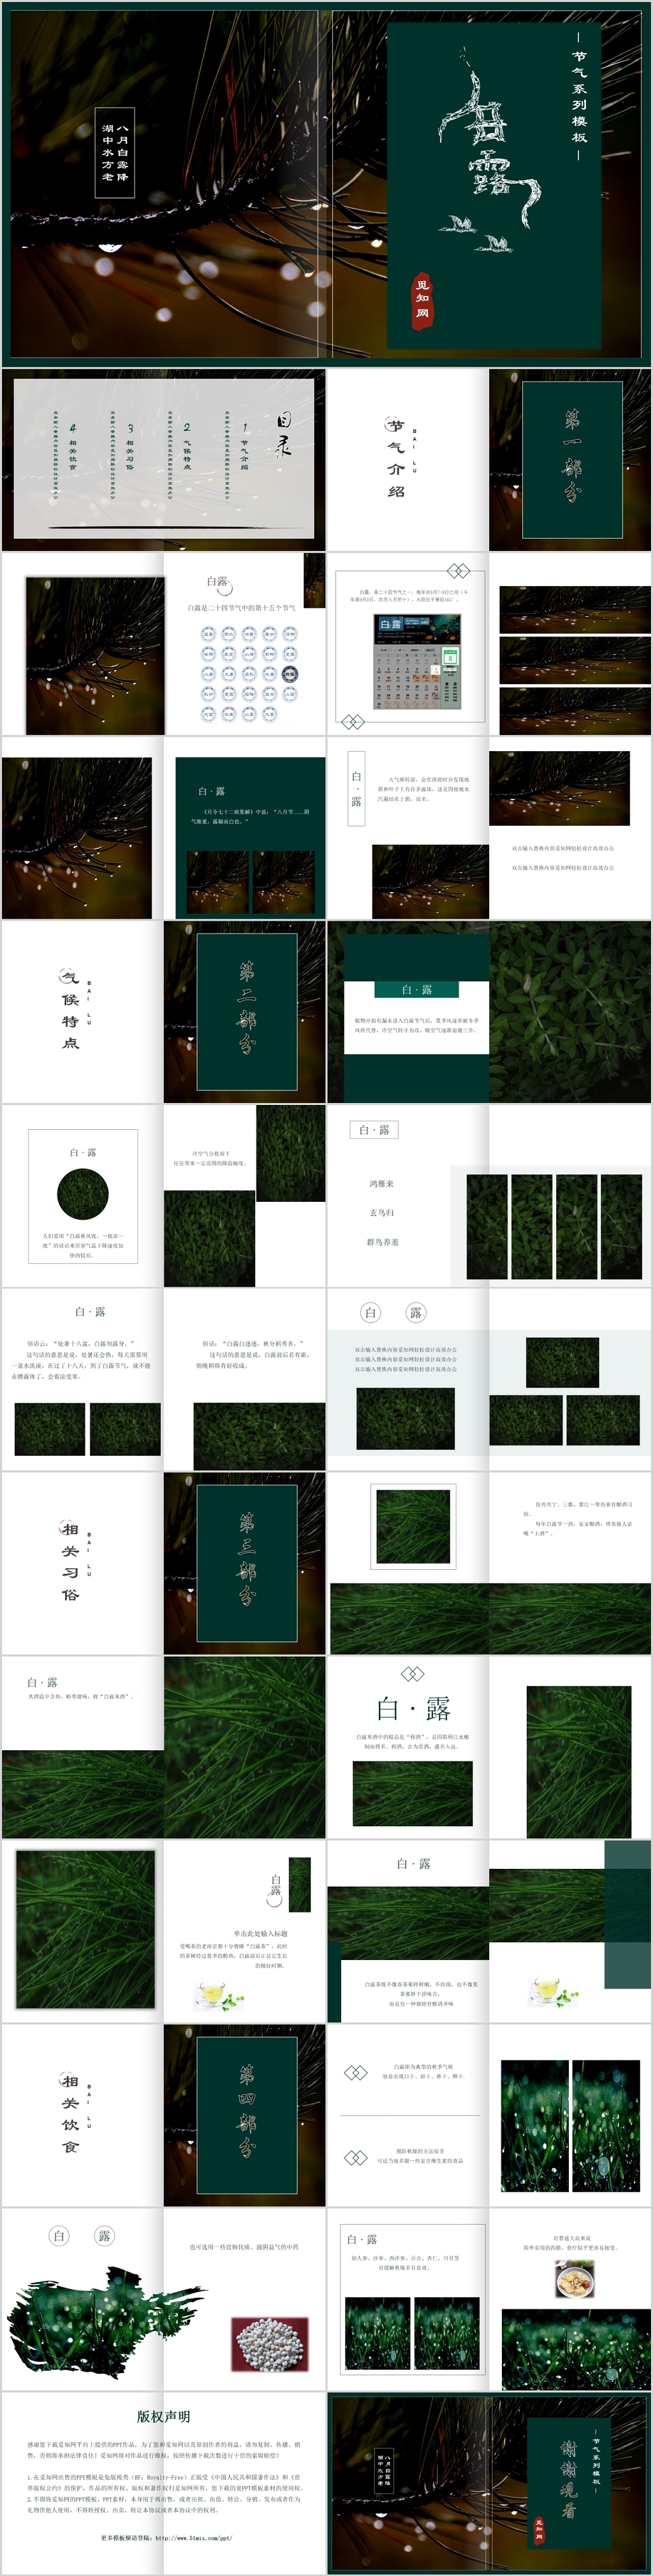 暗绿色中国风植物露水背景二十四节气之白露节气主题PPT模板